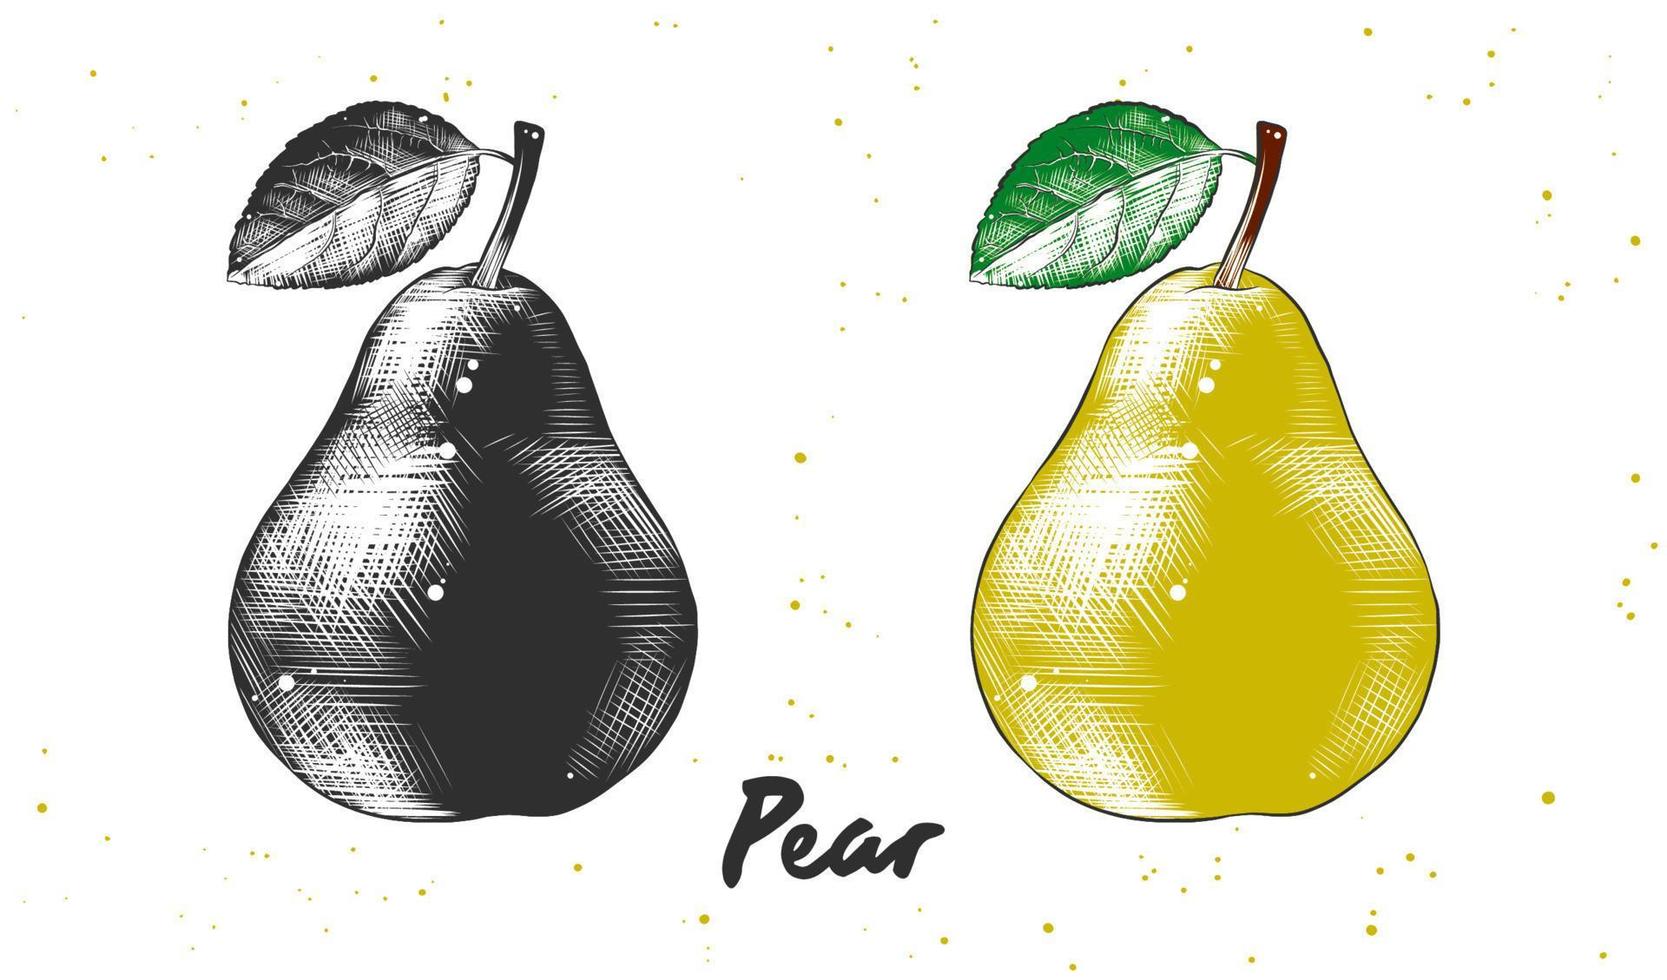 vektor graverat stil illustration för affischer, dekoration och skriva ut. hand dragen skiss av päron i svartvit och färgrik. detaljerad vegetarian mat teckning.